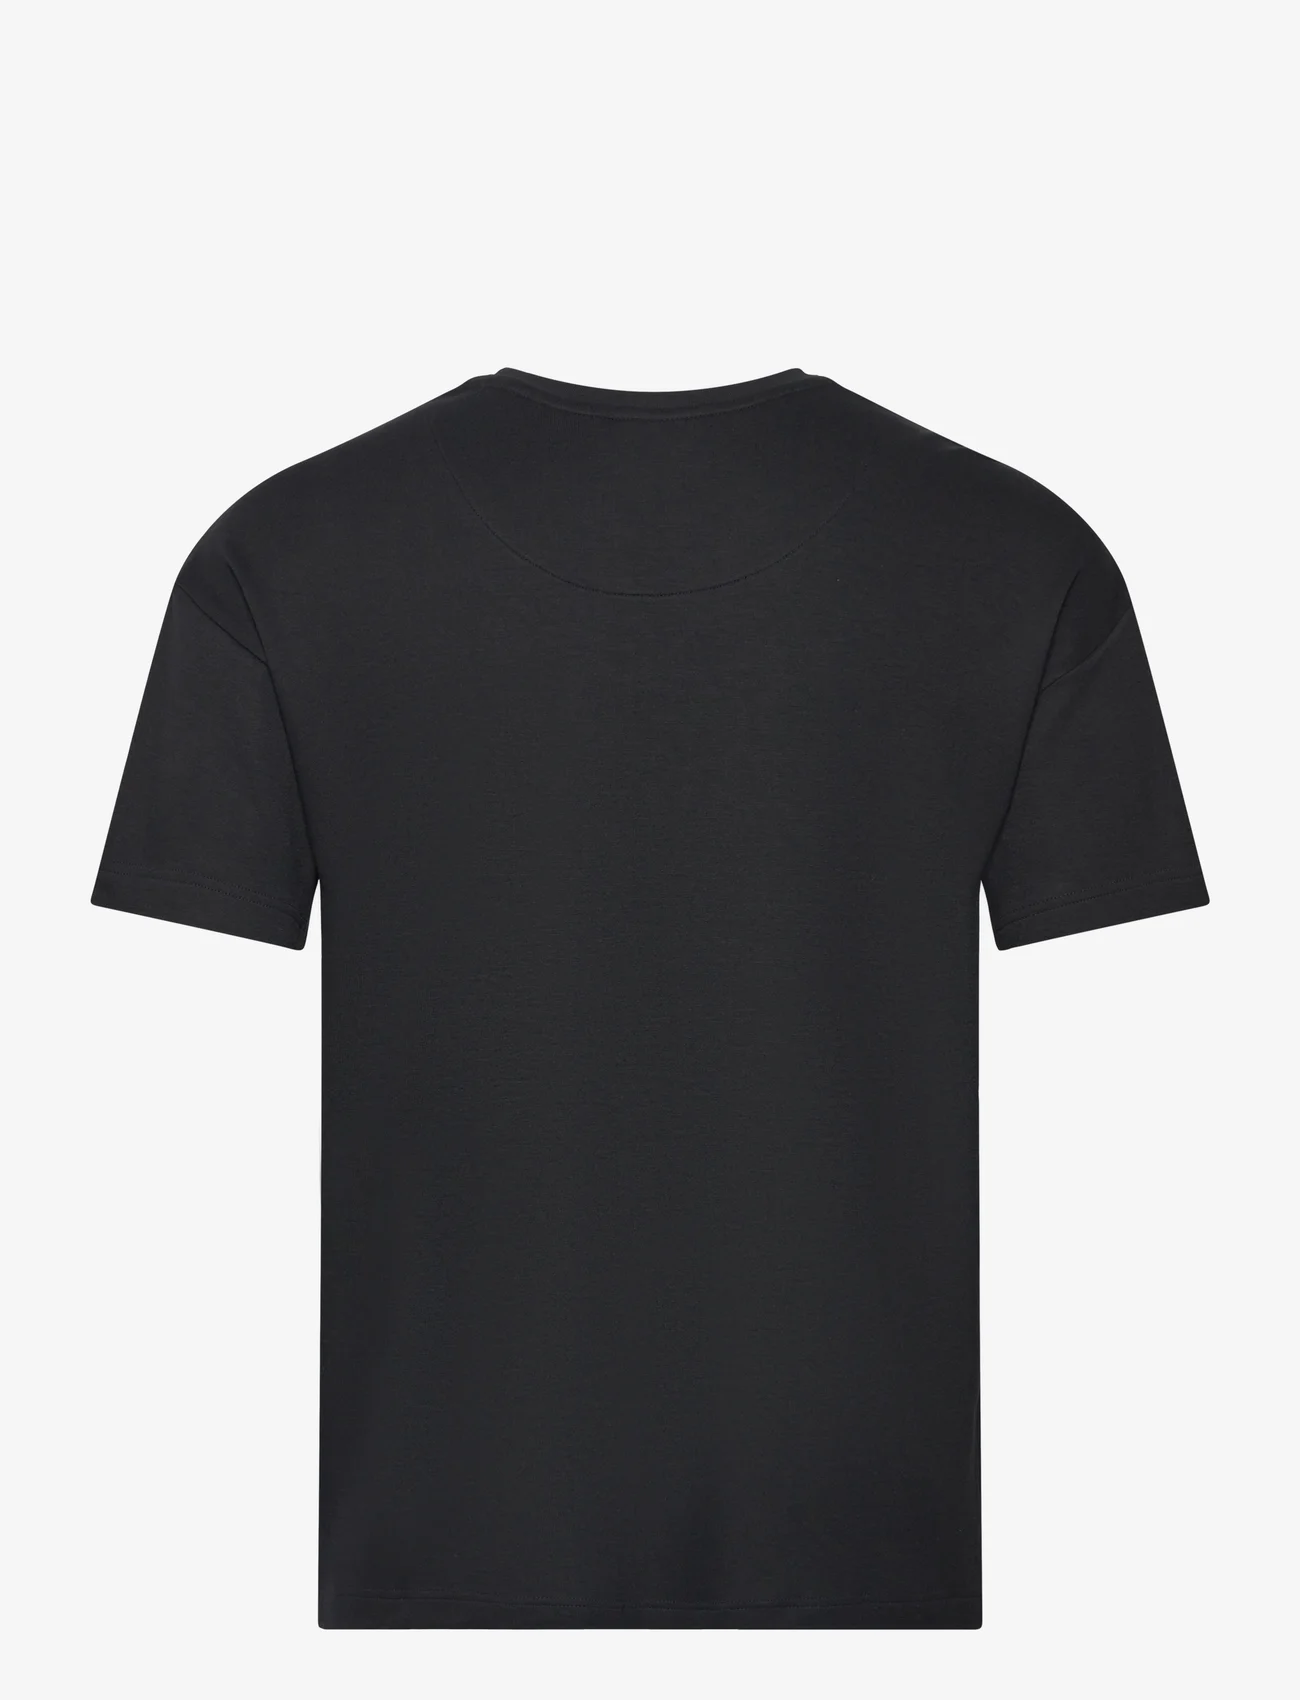 HUGO - Camo T-Shirt - kortermede t-skjorter - black - 1